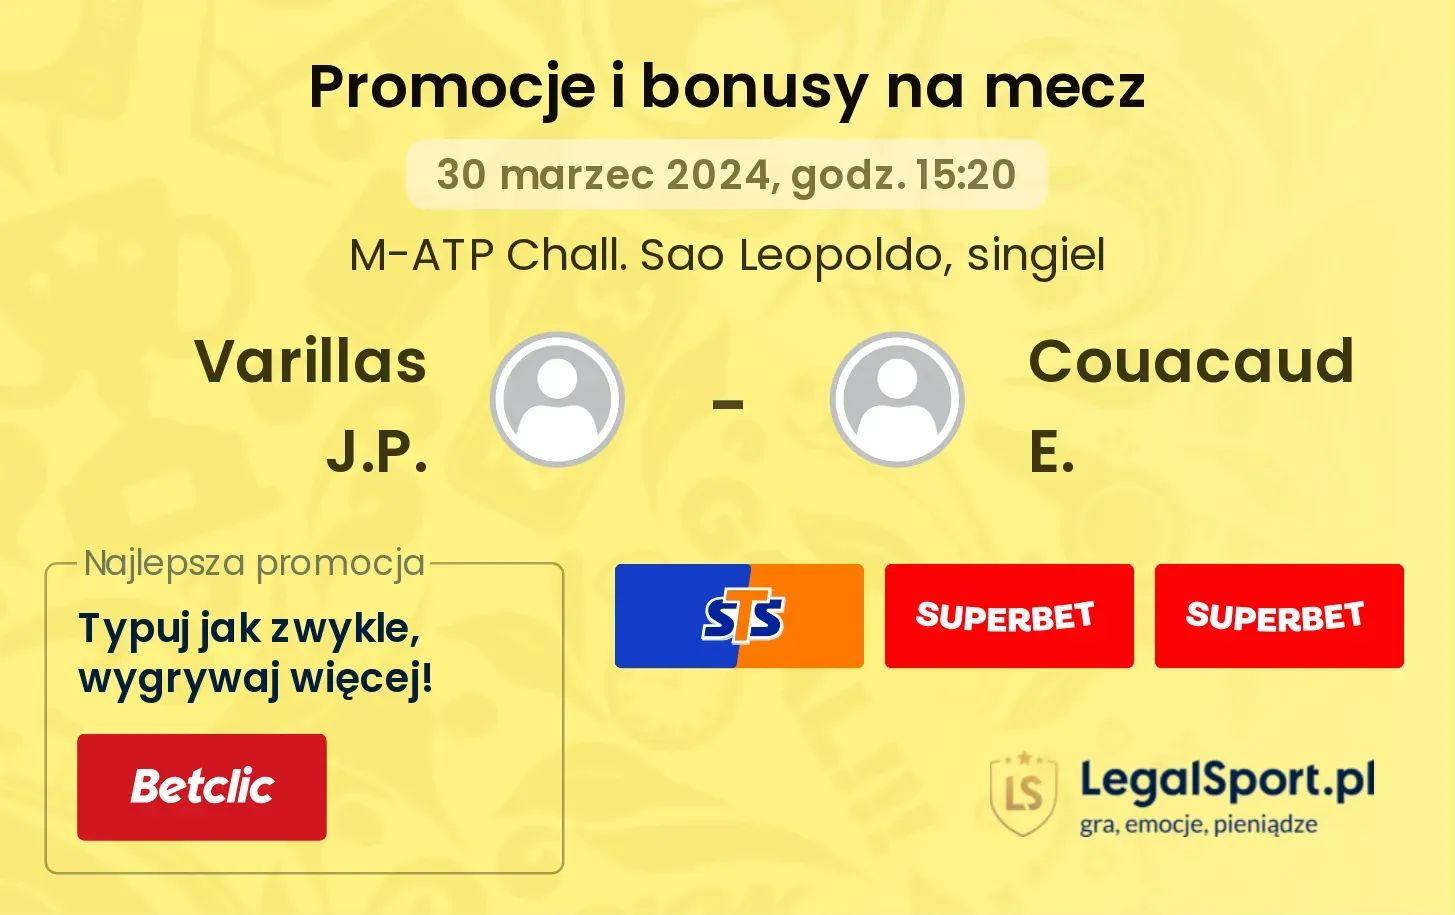 Varillas J.P. - Couacaud E. promocje bonusy na mecz